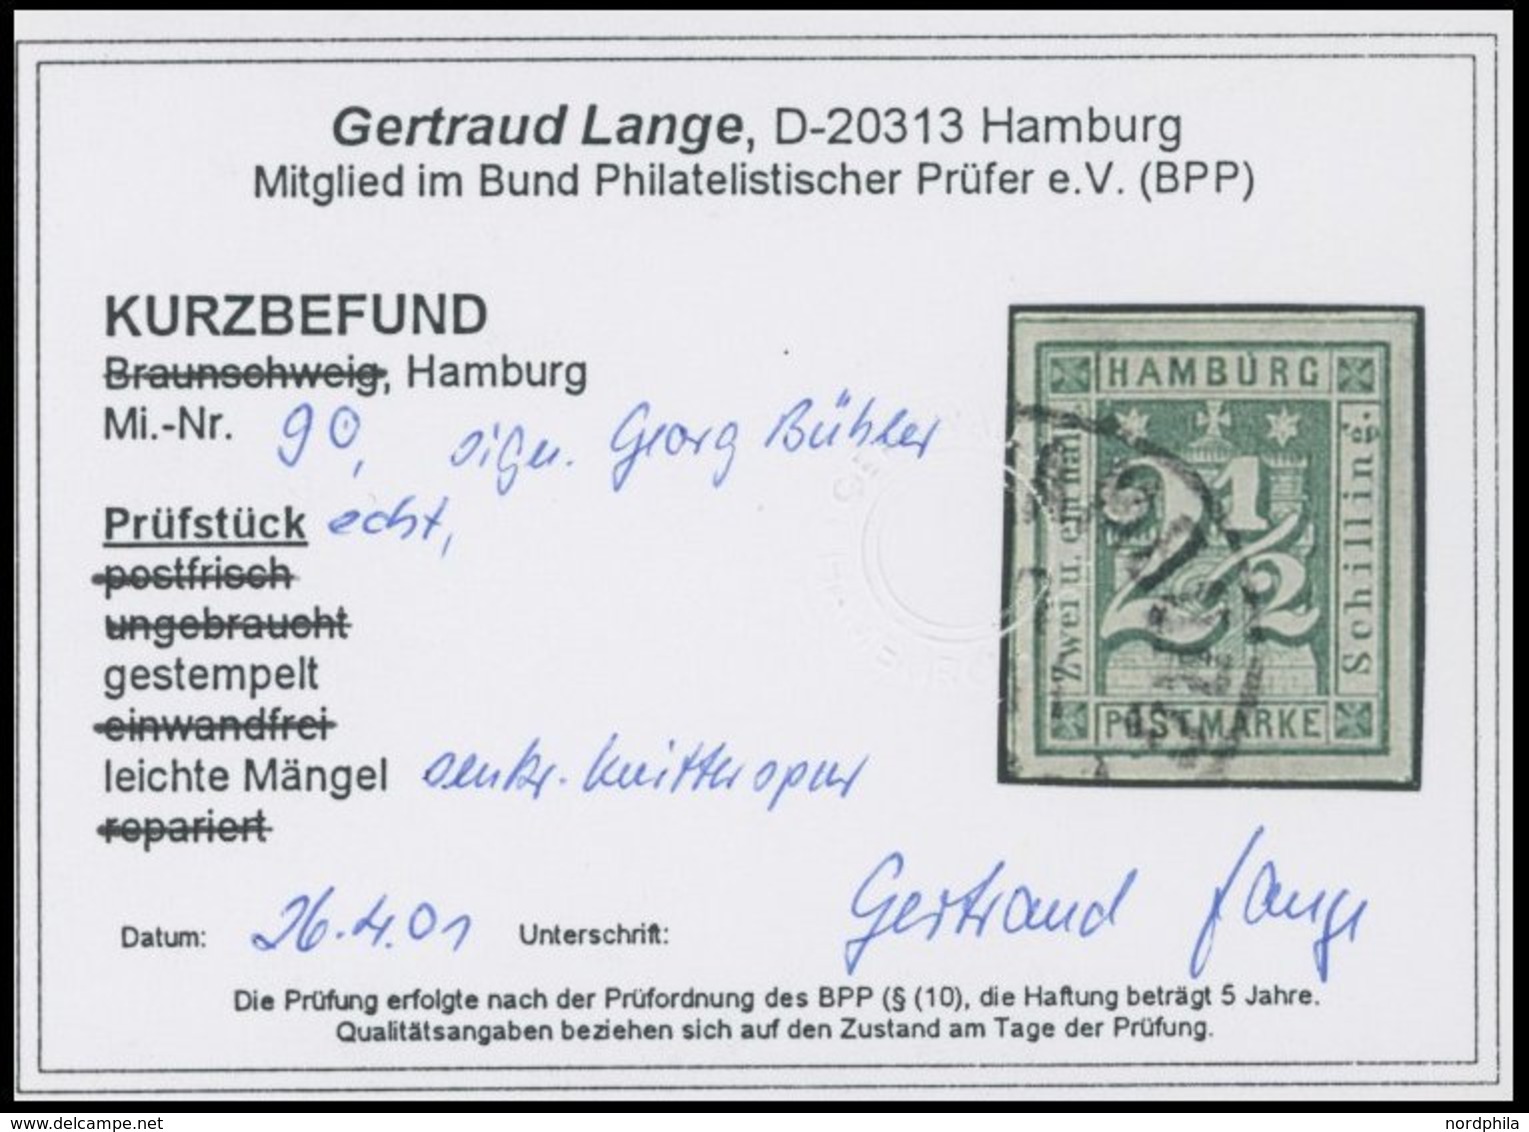 HAMBURG 9 O, 1864, 21/2 S. Blaugrün, Leichte Knitterspur Sonst Breitrandig Pracht, Fotobefund Lange, Mi. 180.- - Hambourg